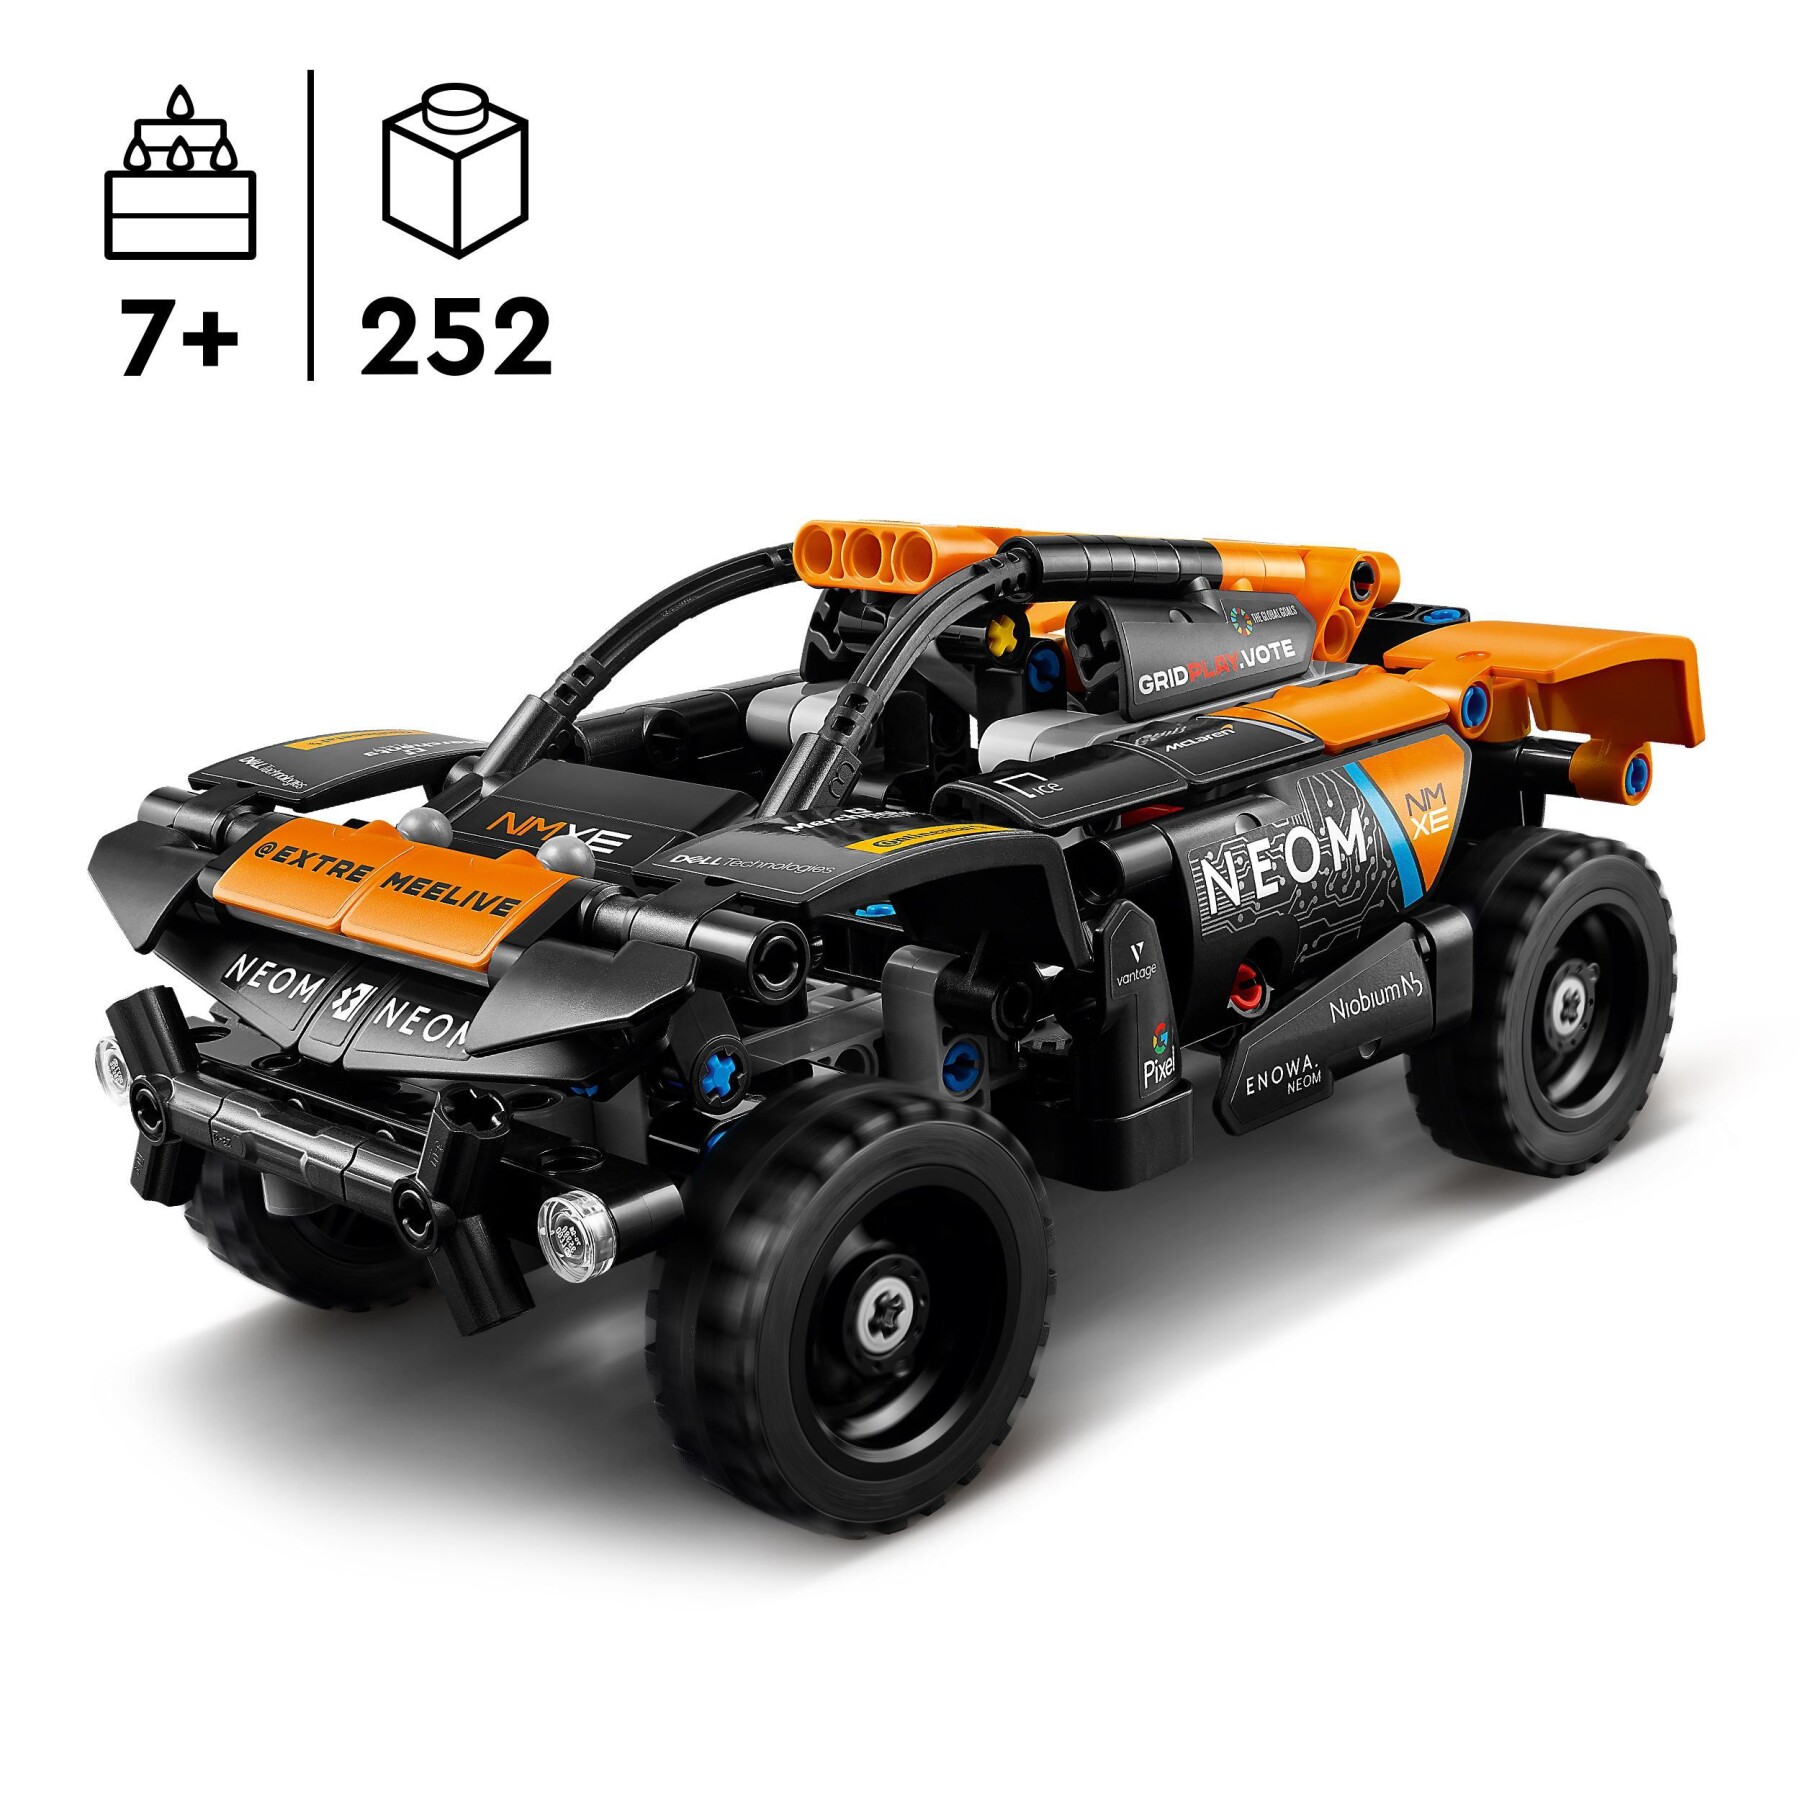 Lego technic 42166 neom mclaren extreme e race car, macchina giocattolo con funzione pull-back, giochi per bambini di 7+ anni - LEGO TECHNIC